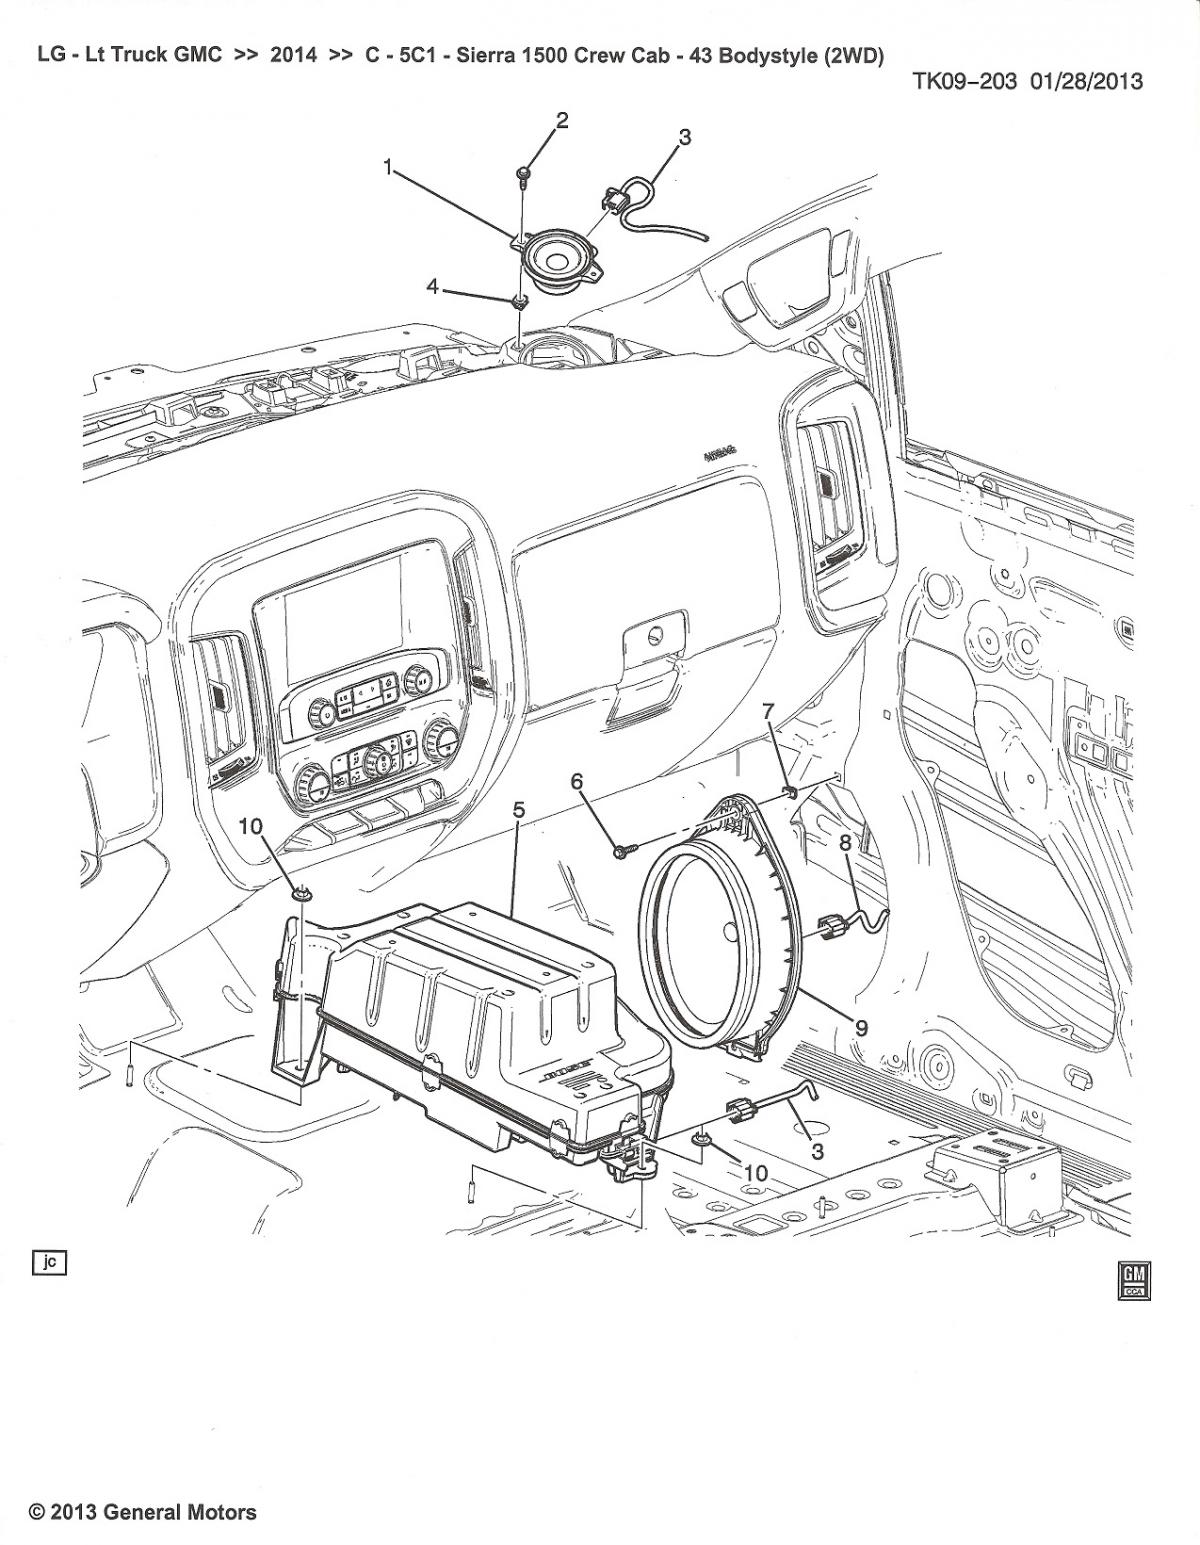 2012 gmc acadia rear view mirror wiring diagram